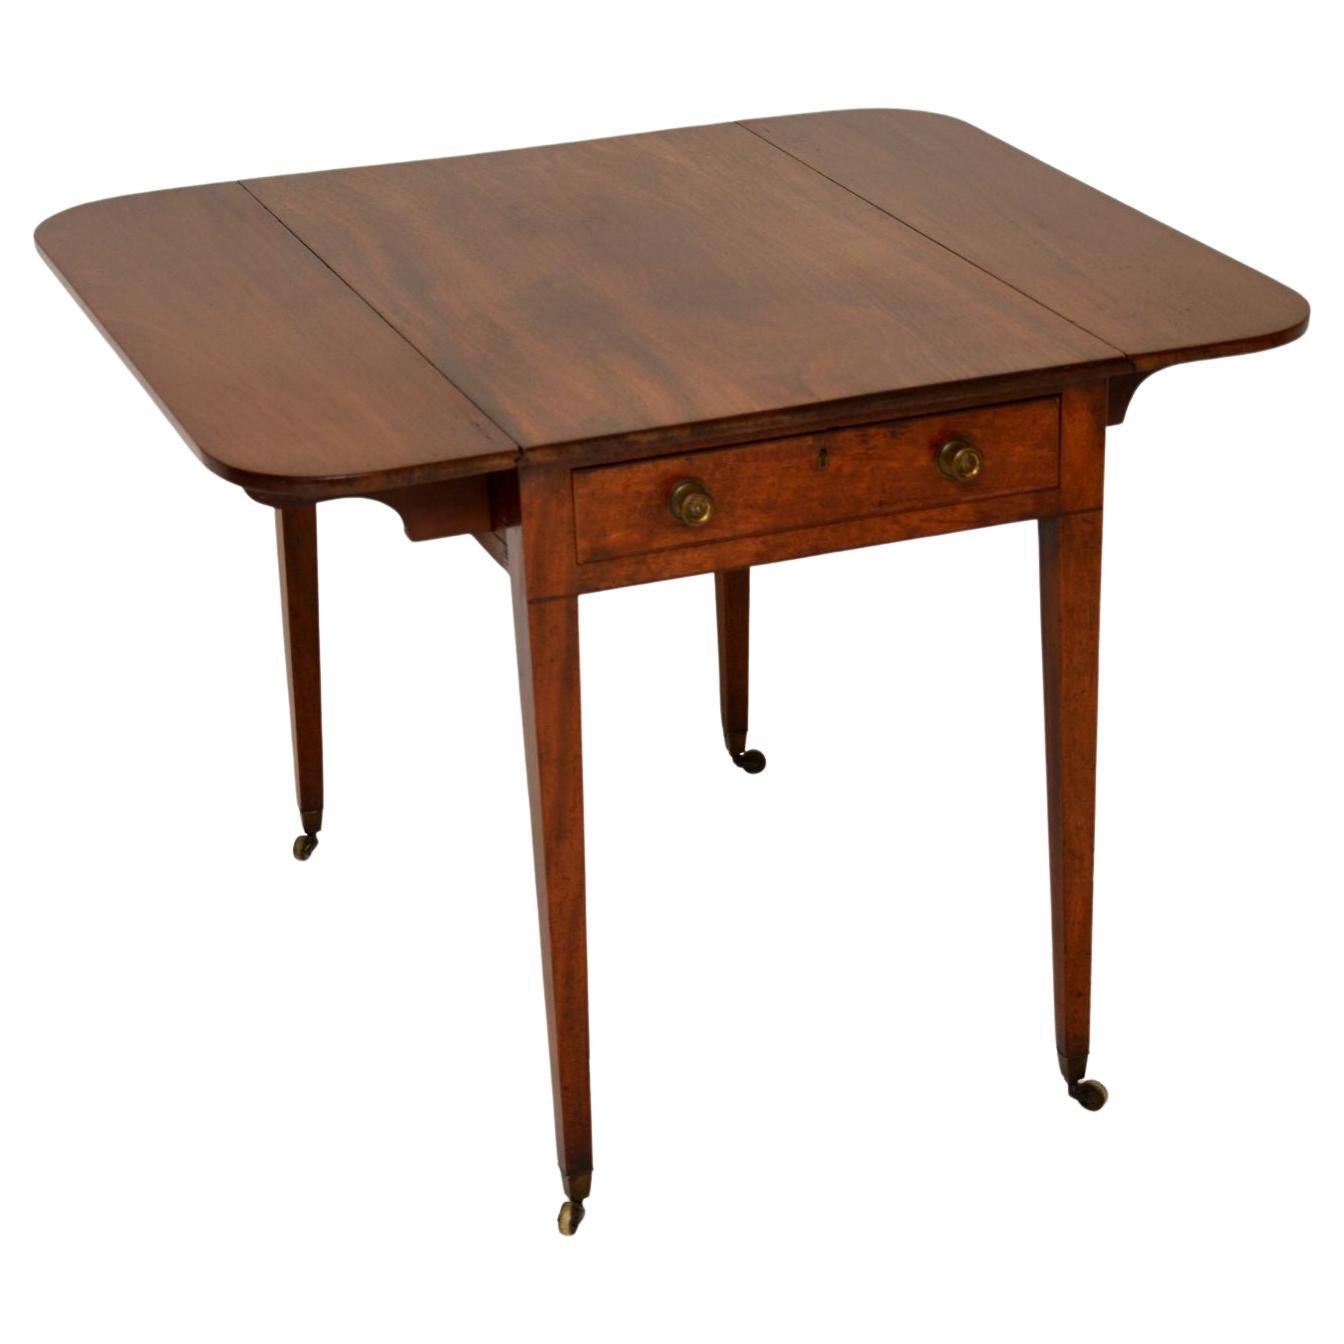 Une élégante table Pembroke d'époque géorgienne, très bien réalisée. Fabriqué en Angleterre, il date de la période 1790-1810.

La qualité est superbe et a acquis une magnifique patine au fil des ans. Les poignées et les roulettes en laiton sont